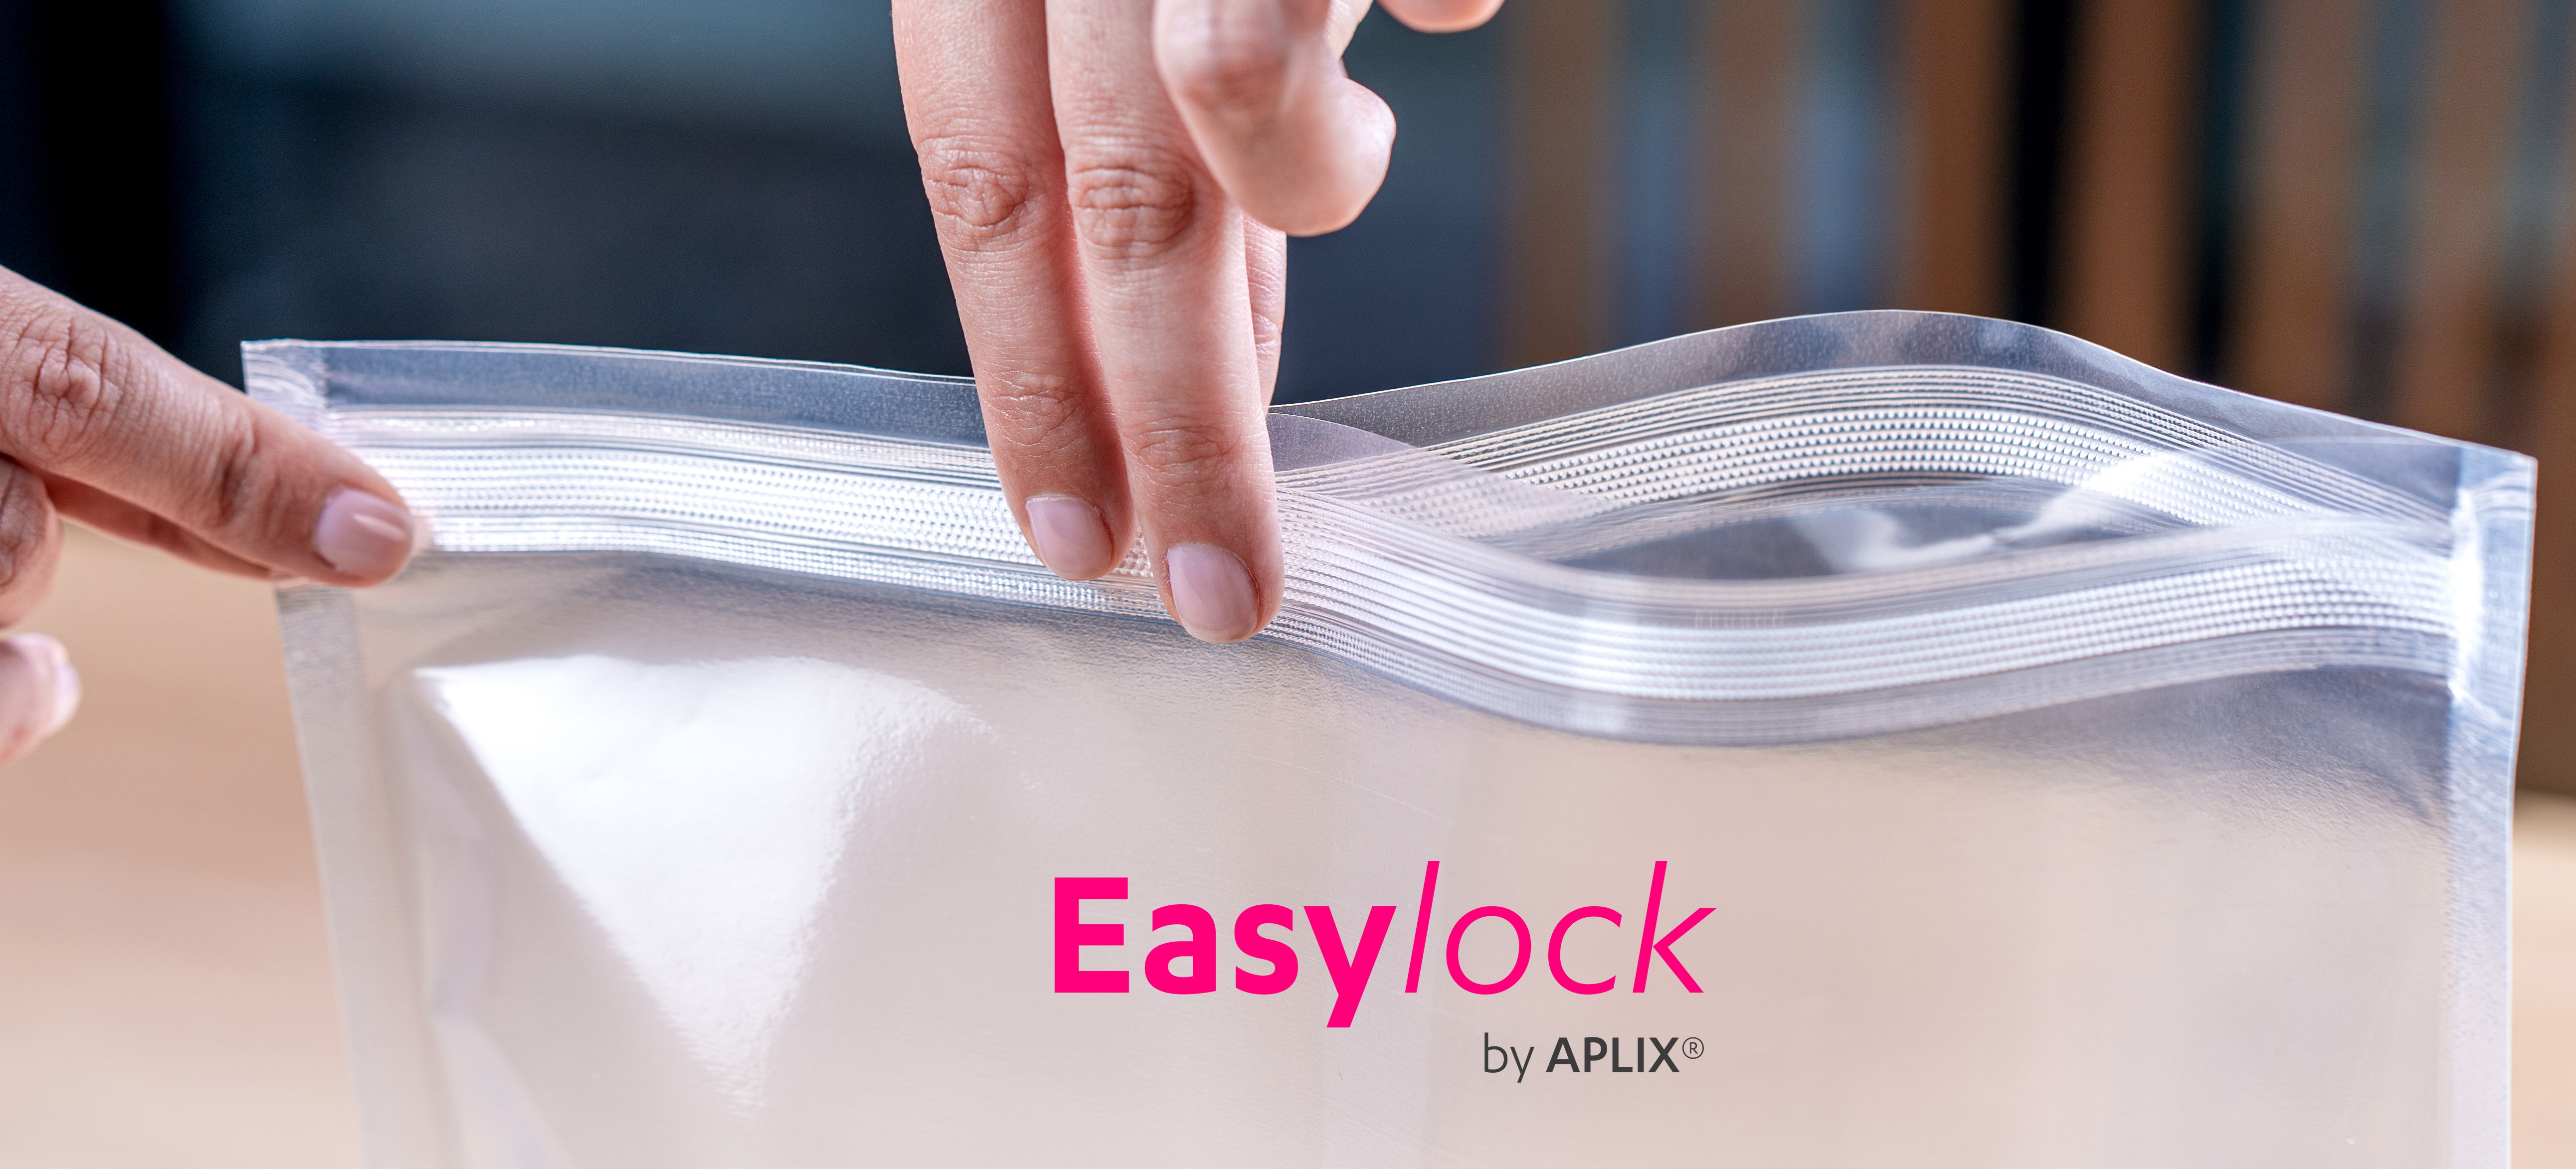 easylock-aplix-packaging-closure-hook-loop-tape